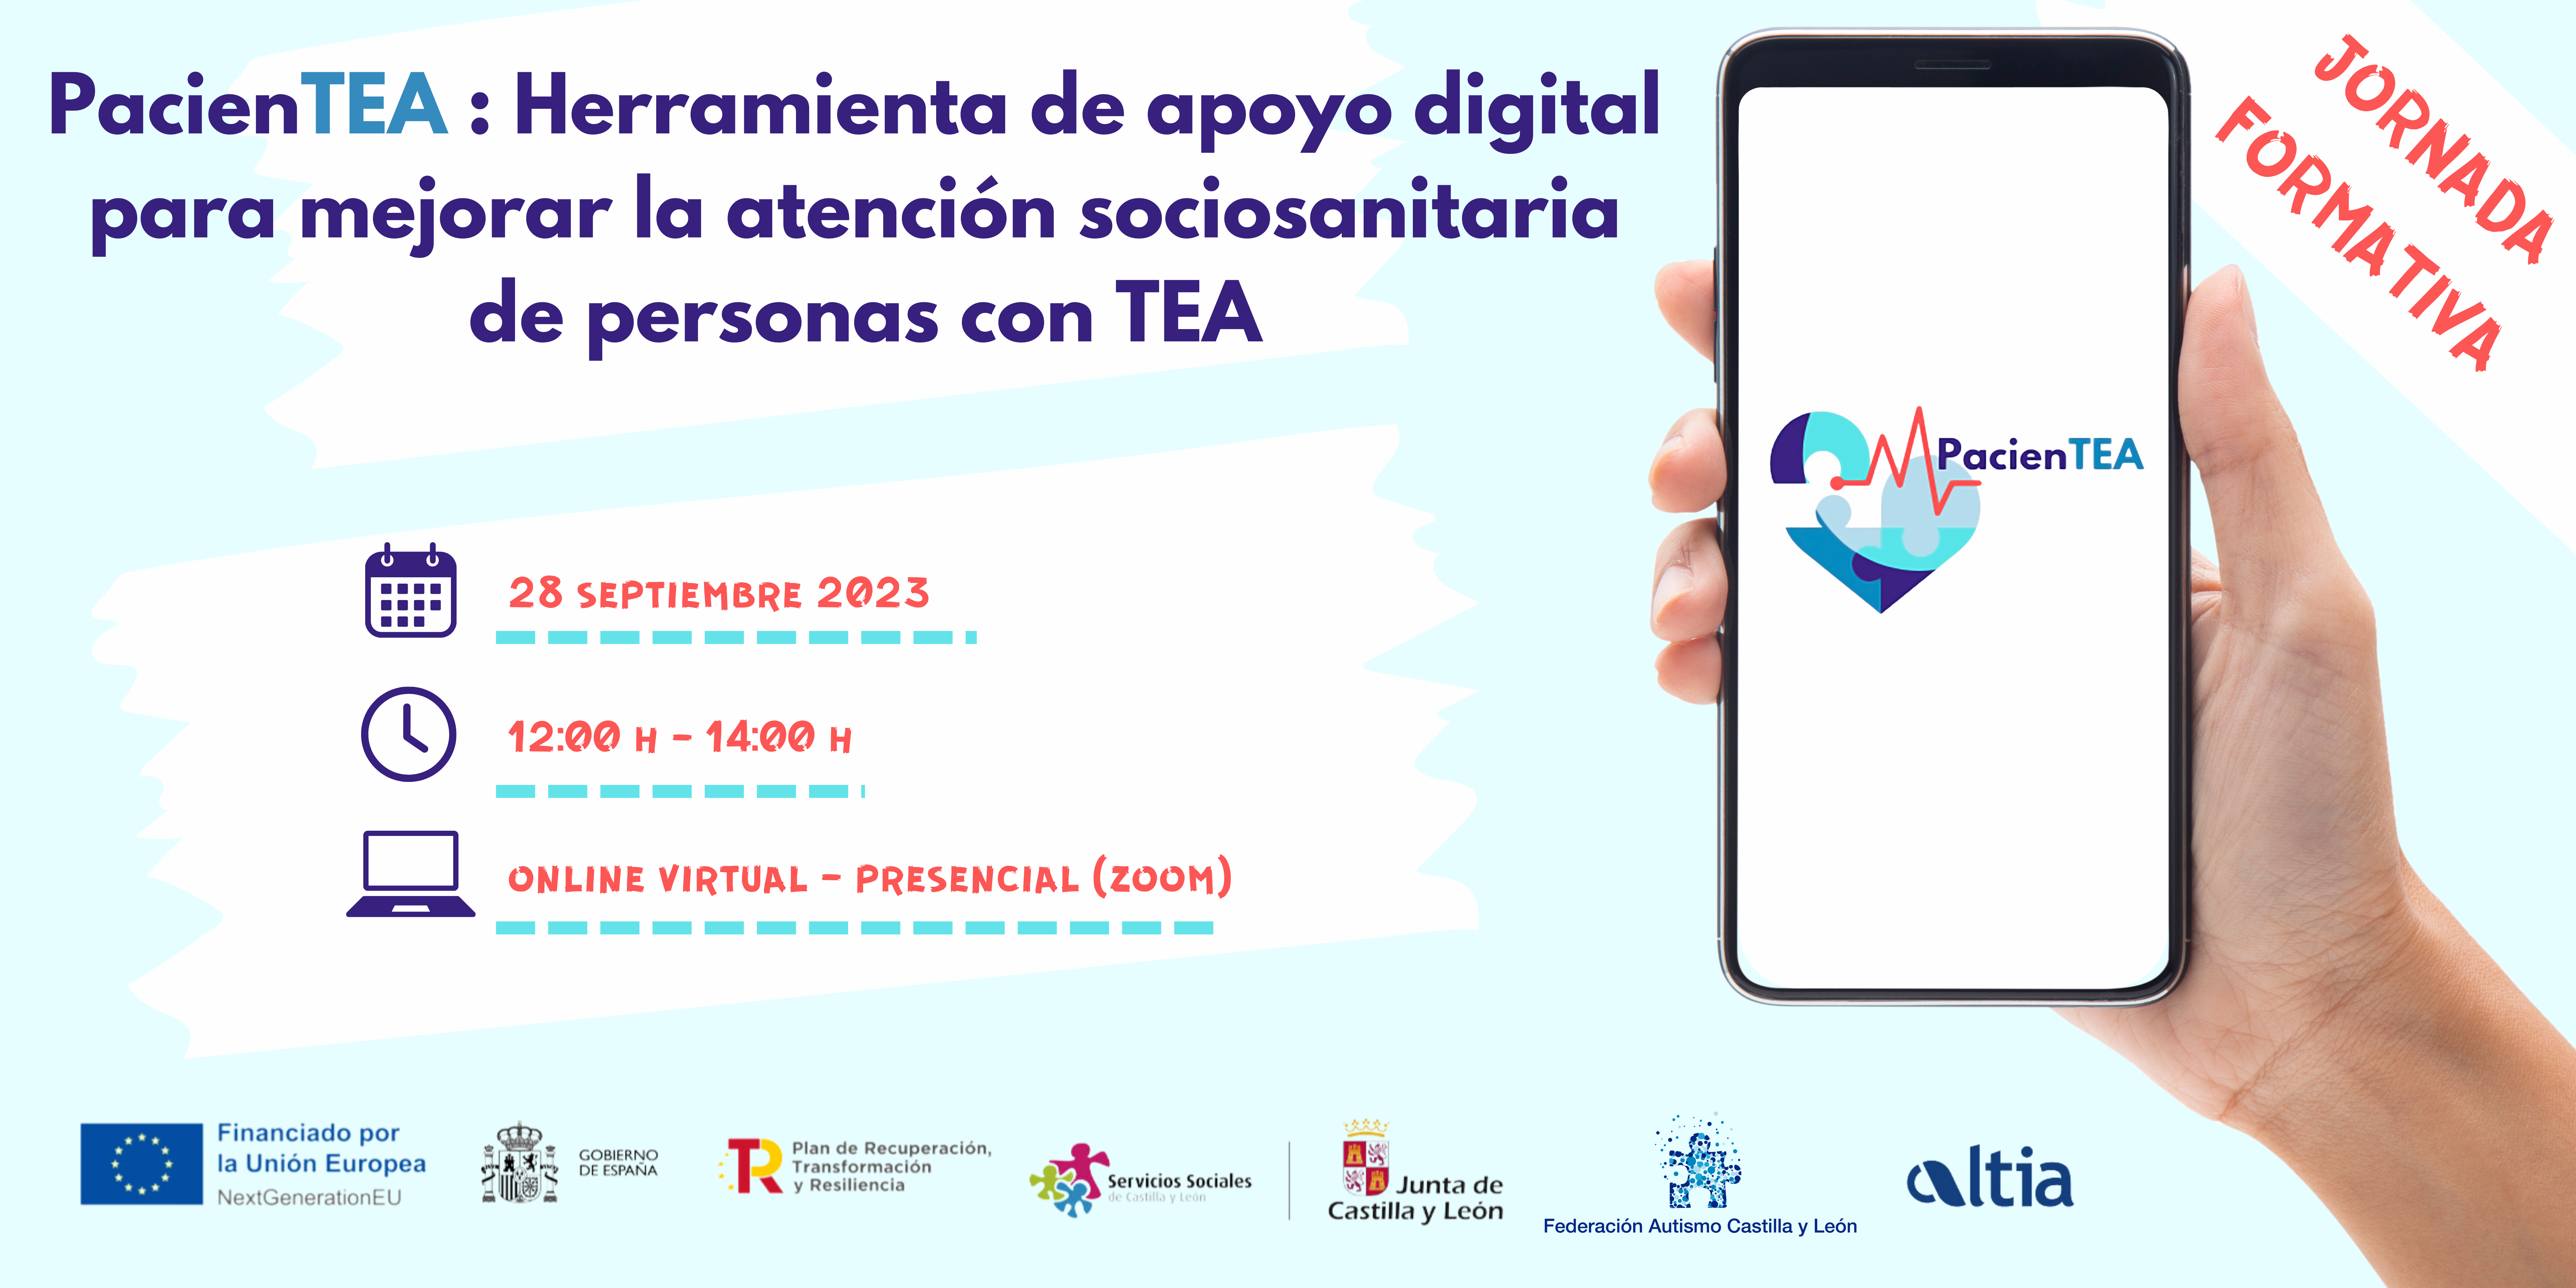 Jornada formativa PacienTEA: Herramienta de apoyo digital para mejorar la atención sociosanitaria de personas con TEA